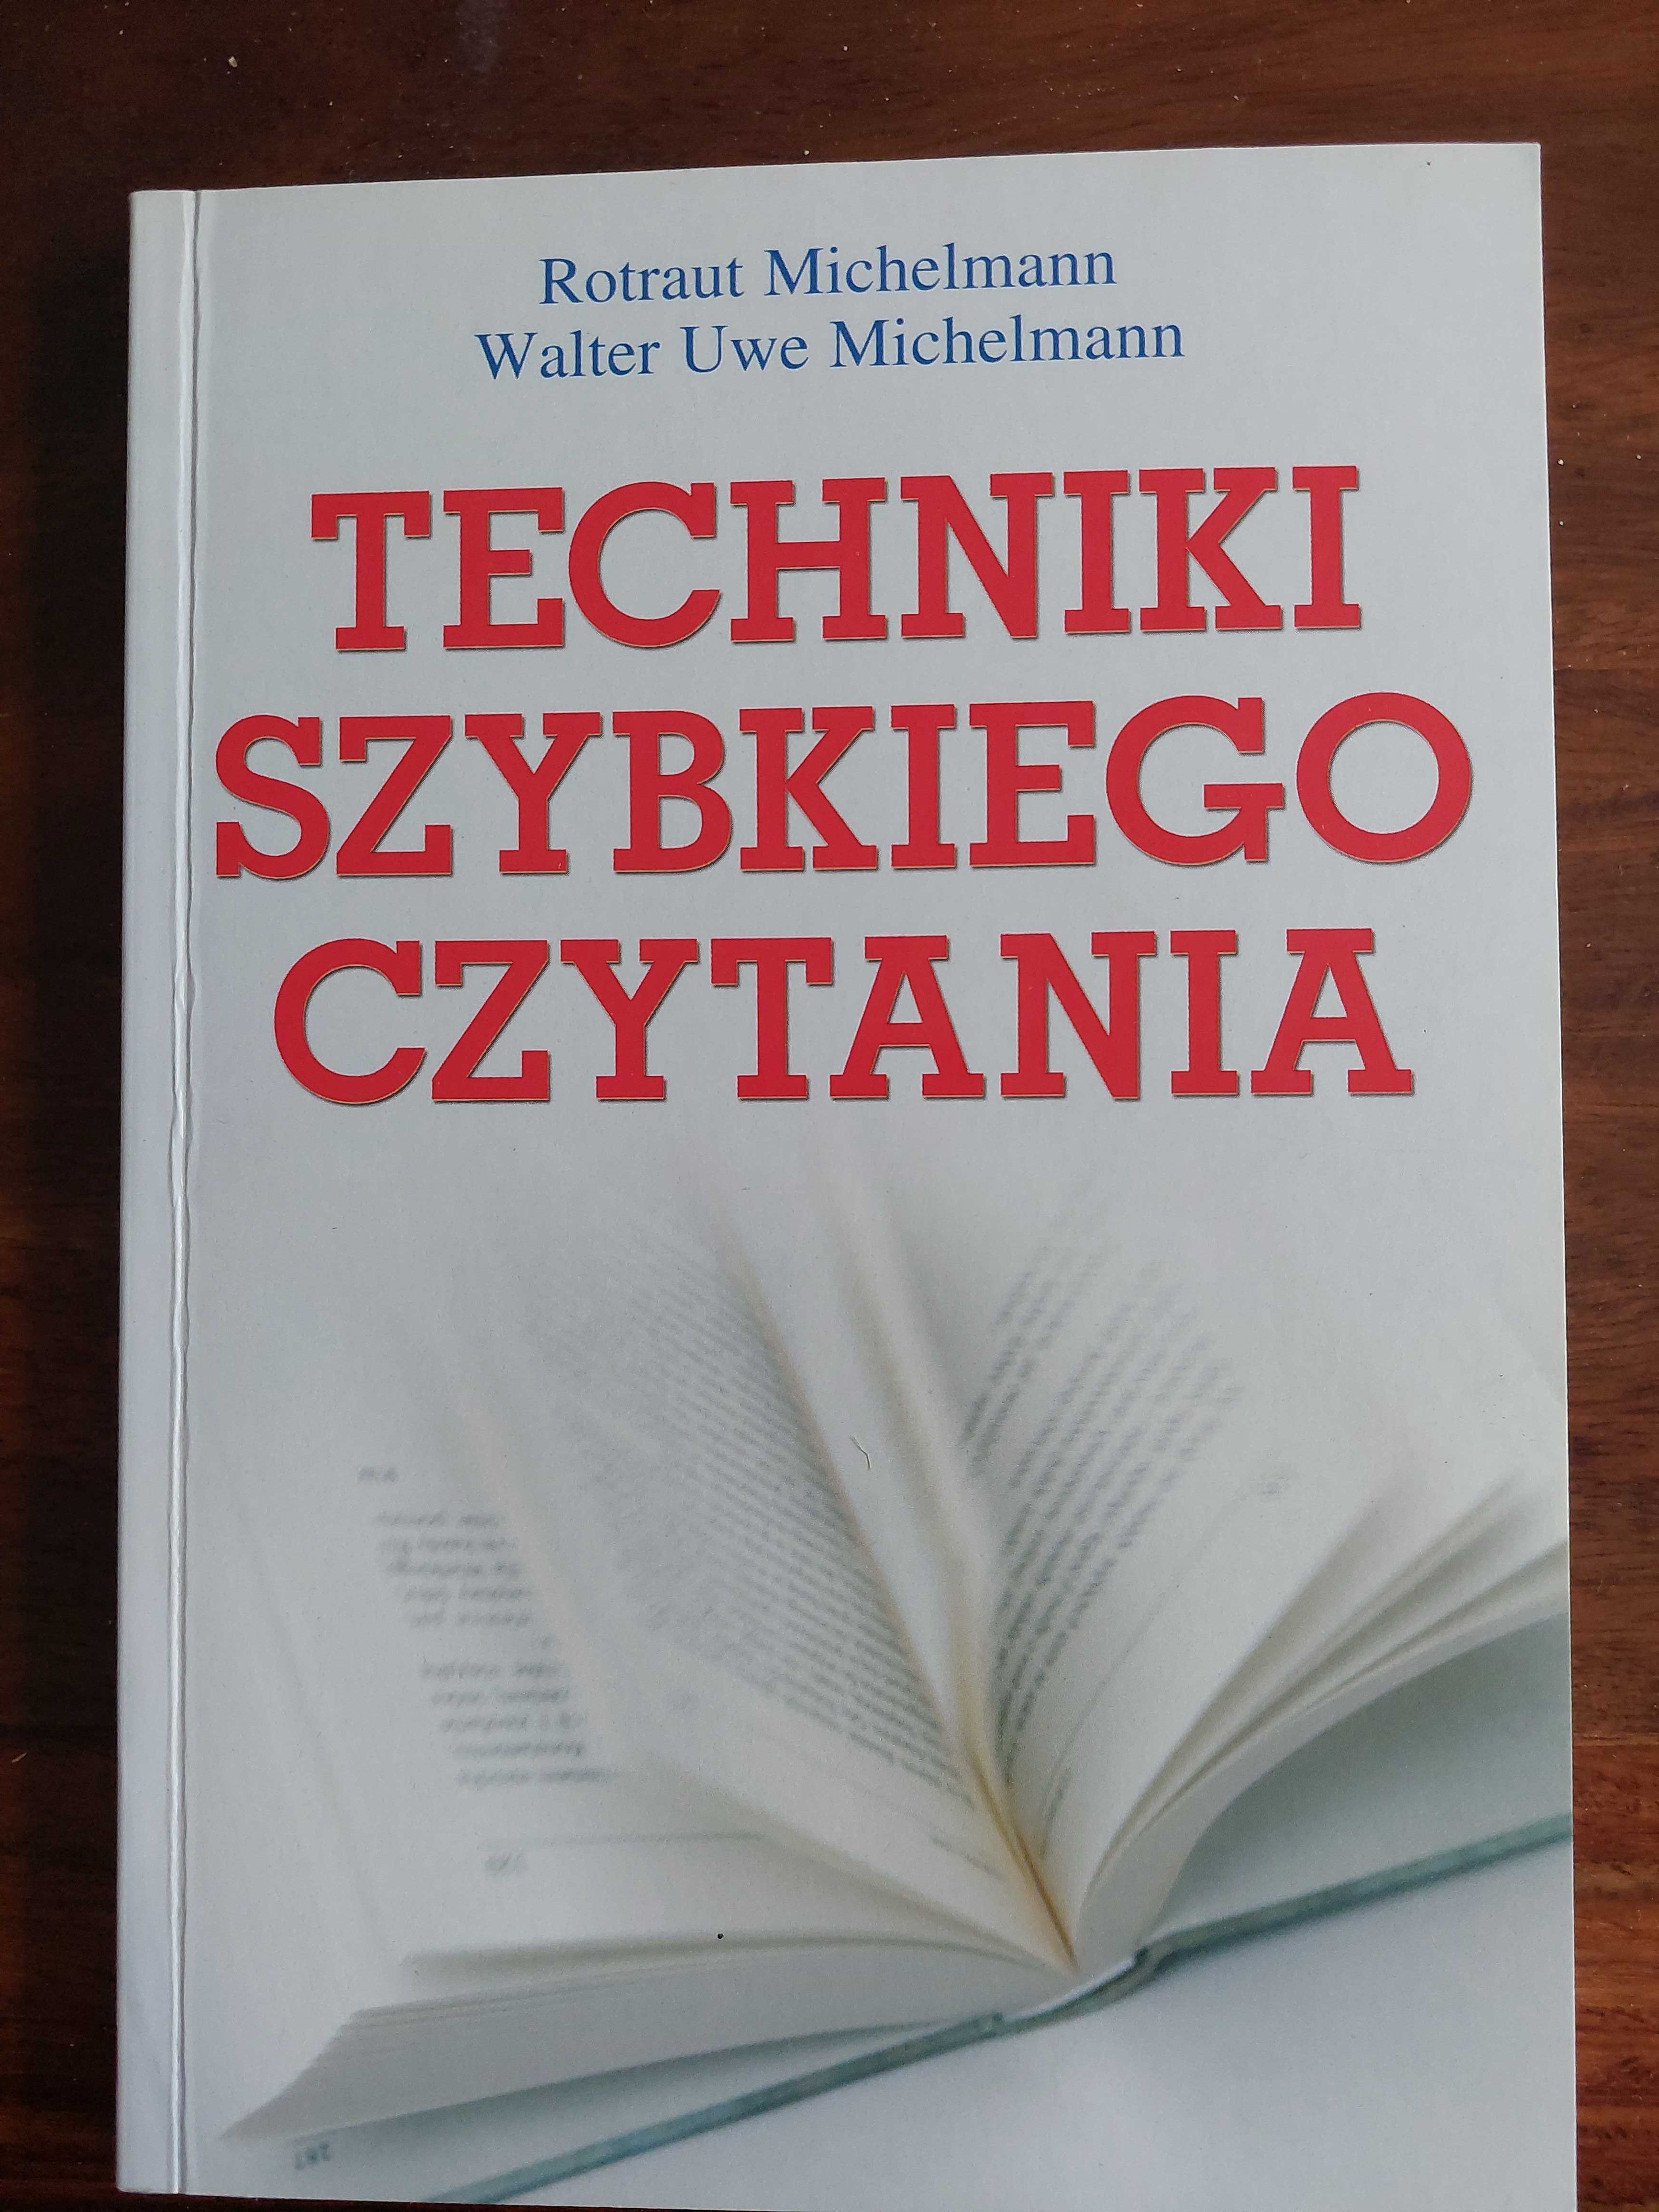 Książka "Techniki szybkiego czytania"